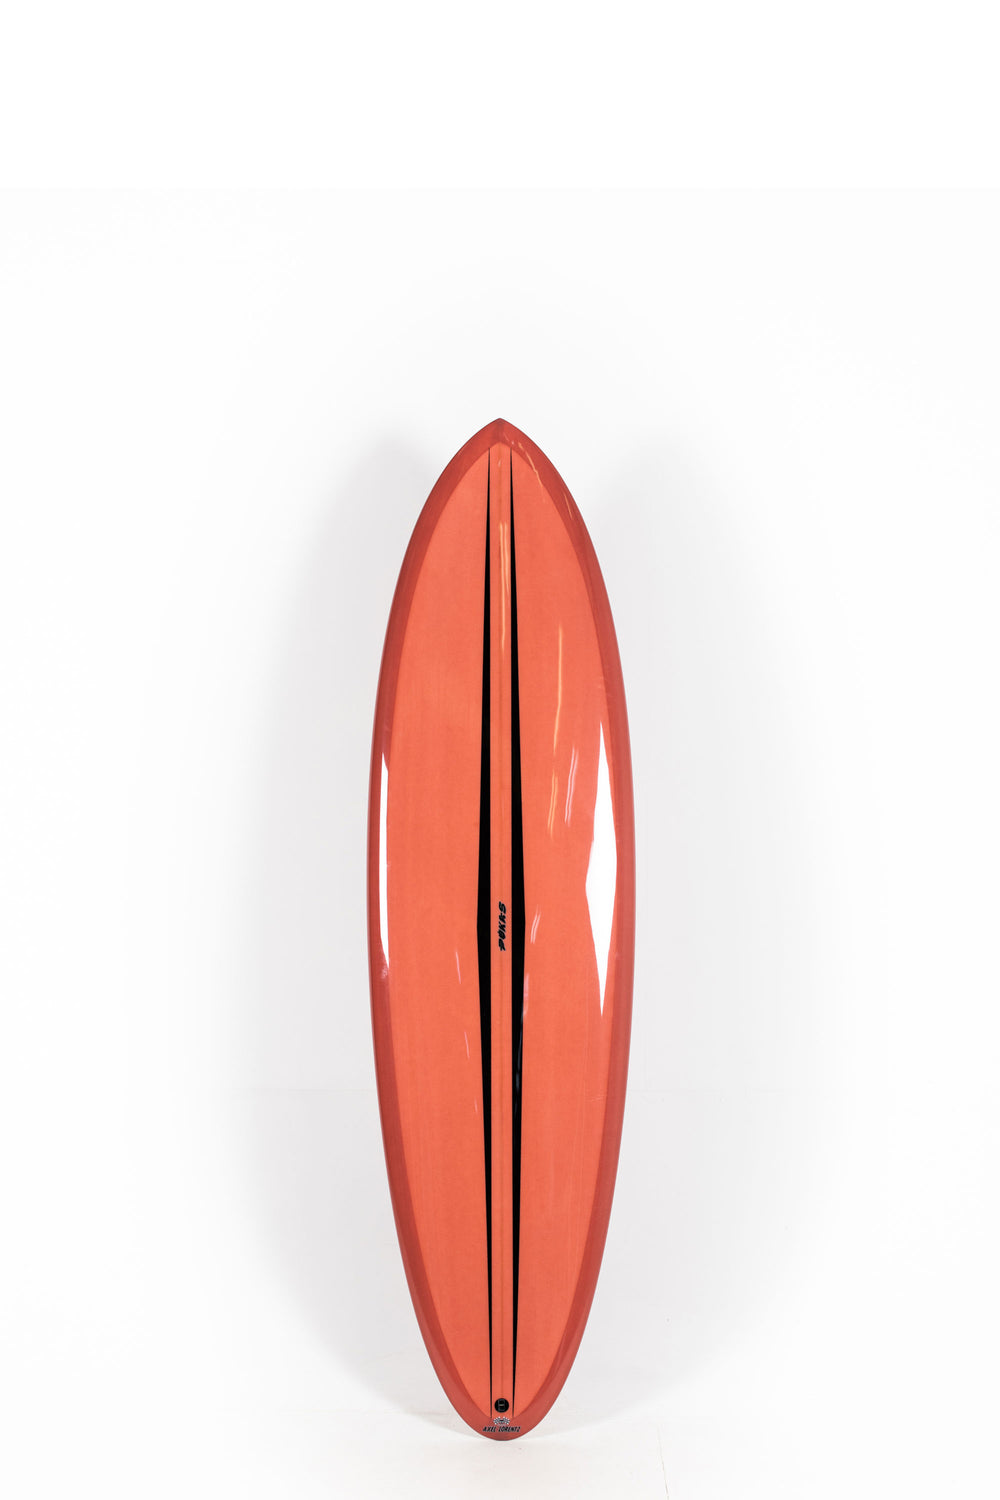 Pukas Surf Shop - Pukas Surfboard - LA CÔTE by Axel Lorentz - 6´7